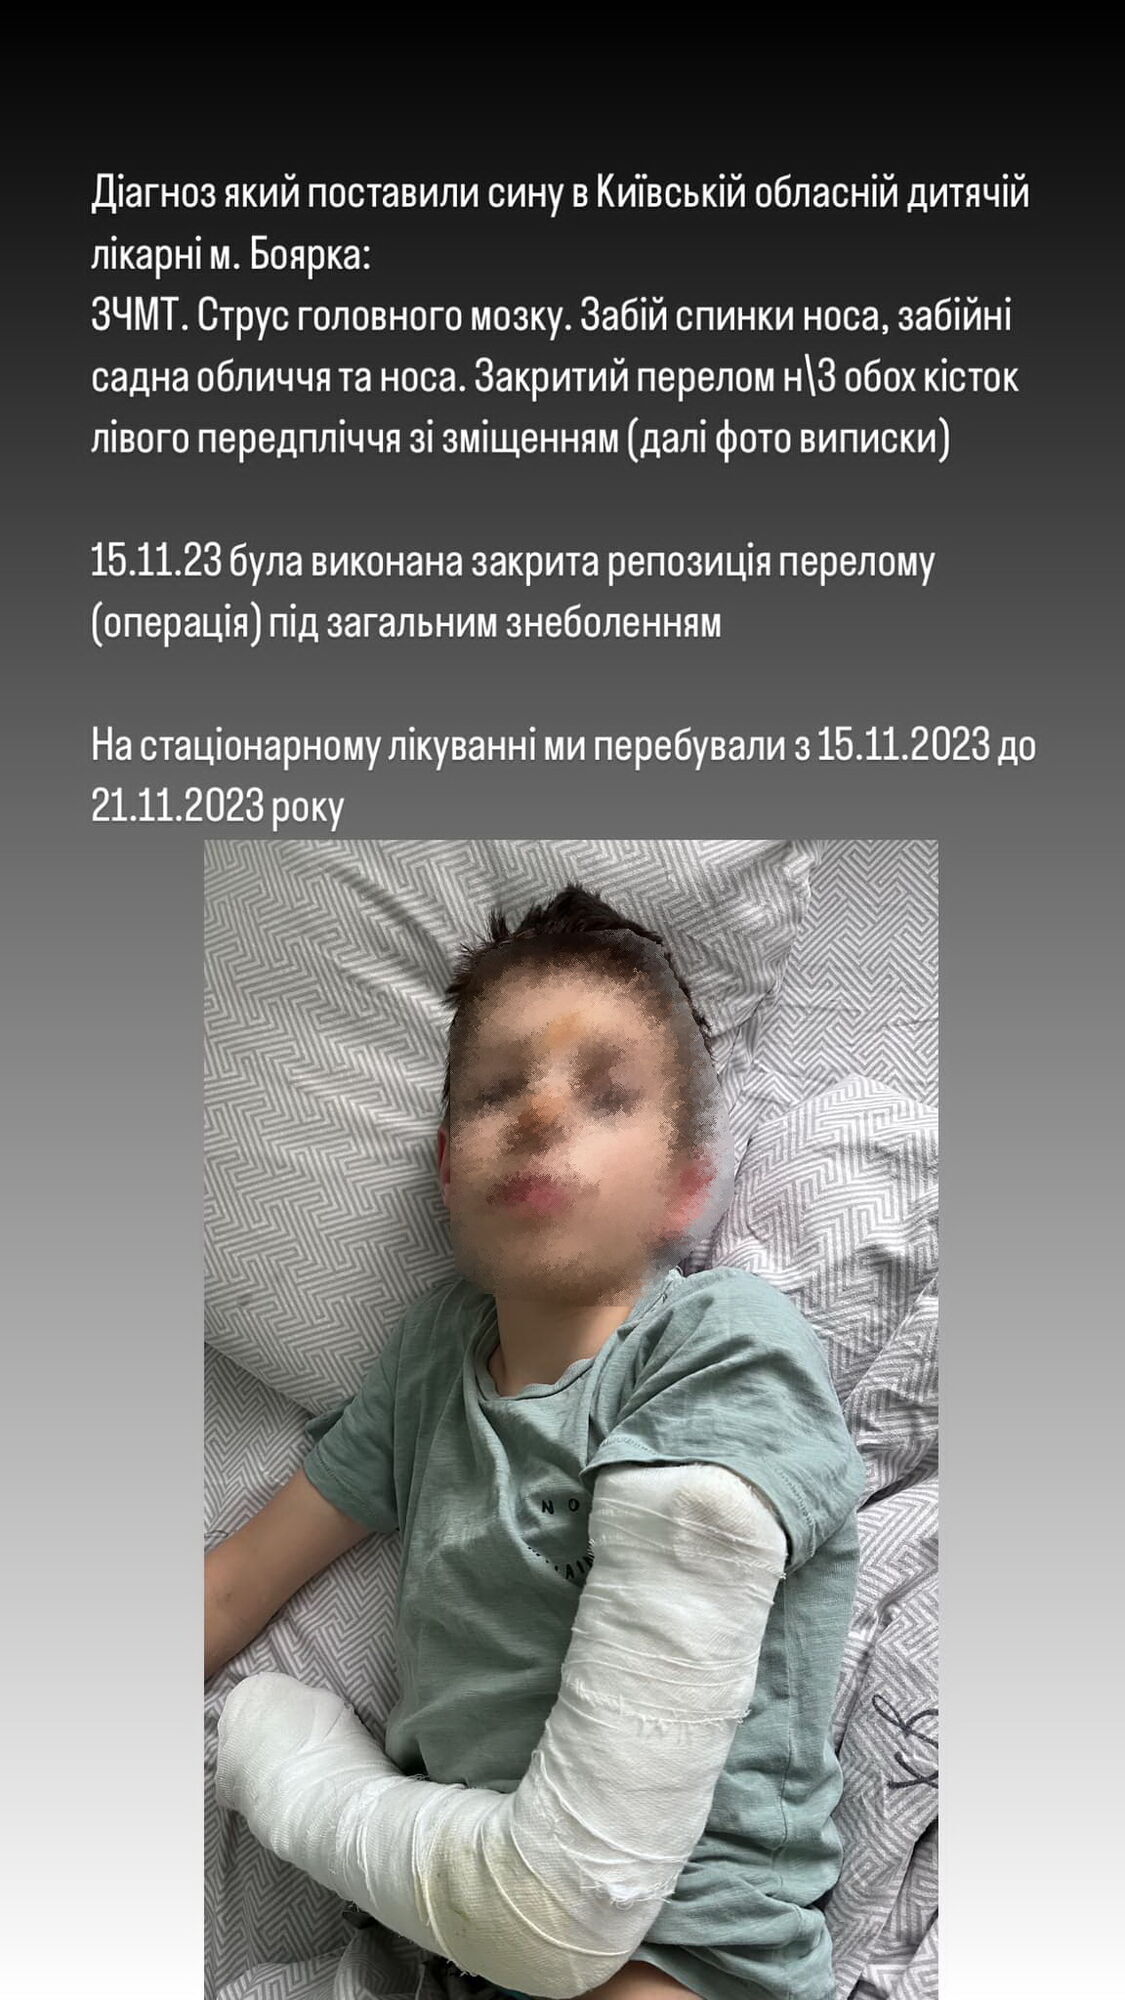 Закрытый перелом и сотрясение мозга: на Киевщине в гимназии ребенка толкнули с высоты. Подробности инцидента и видео